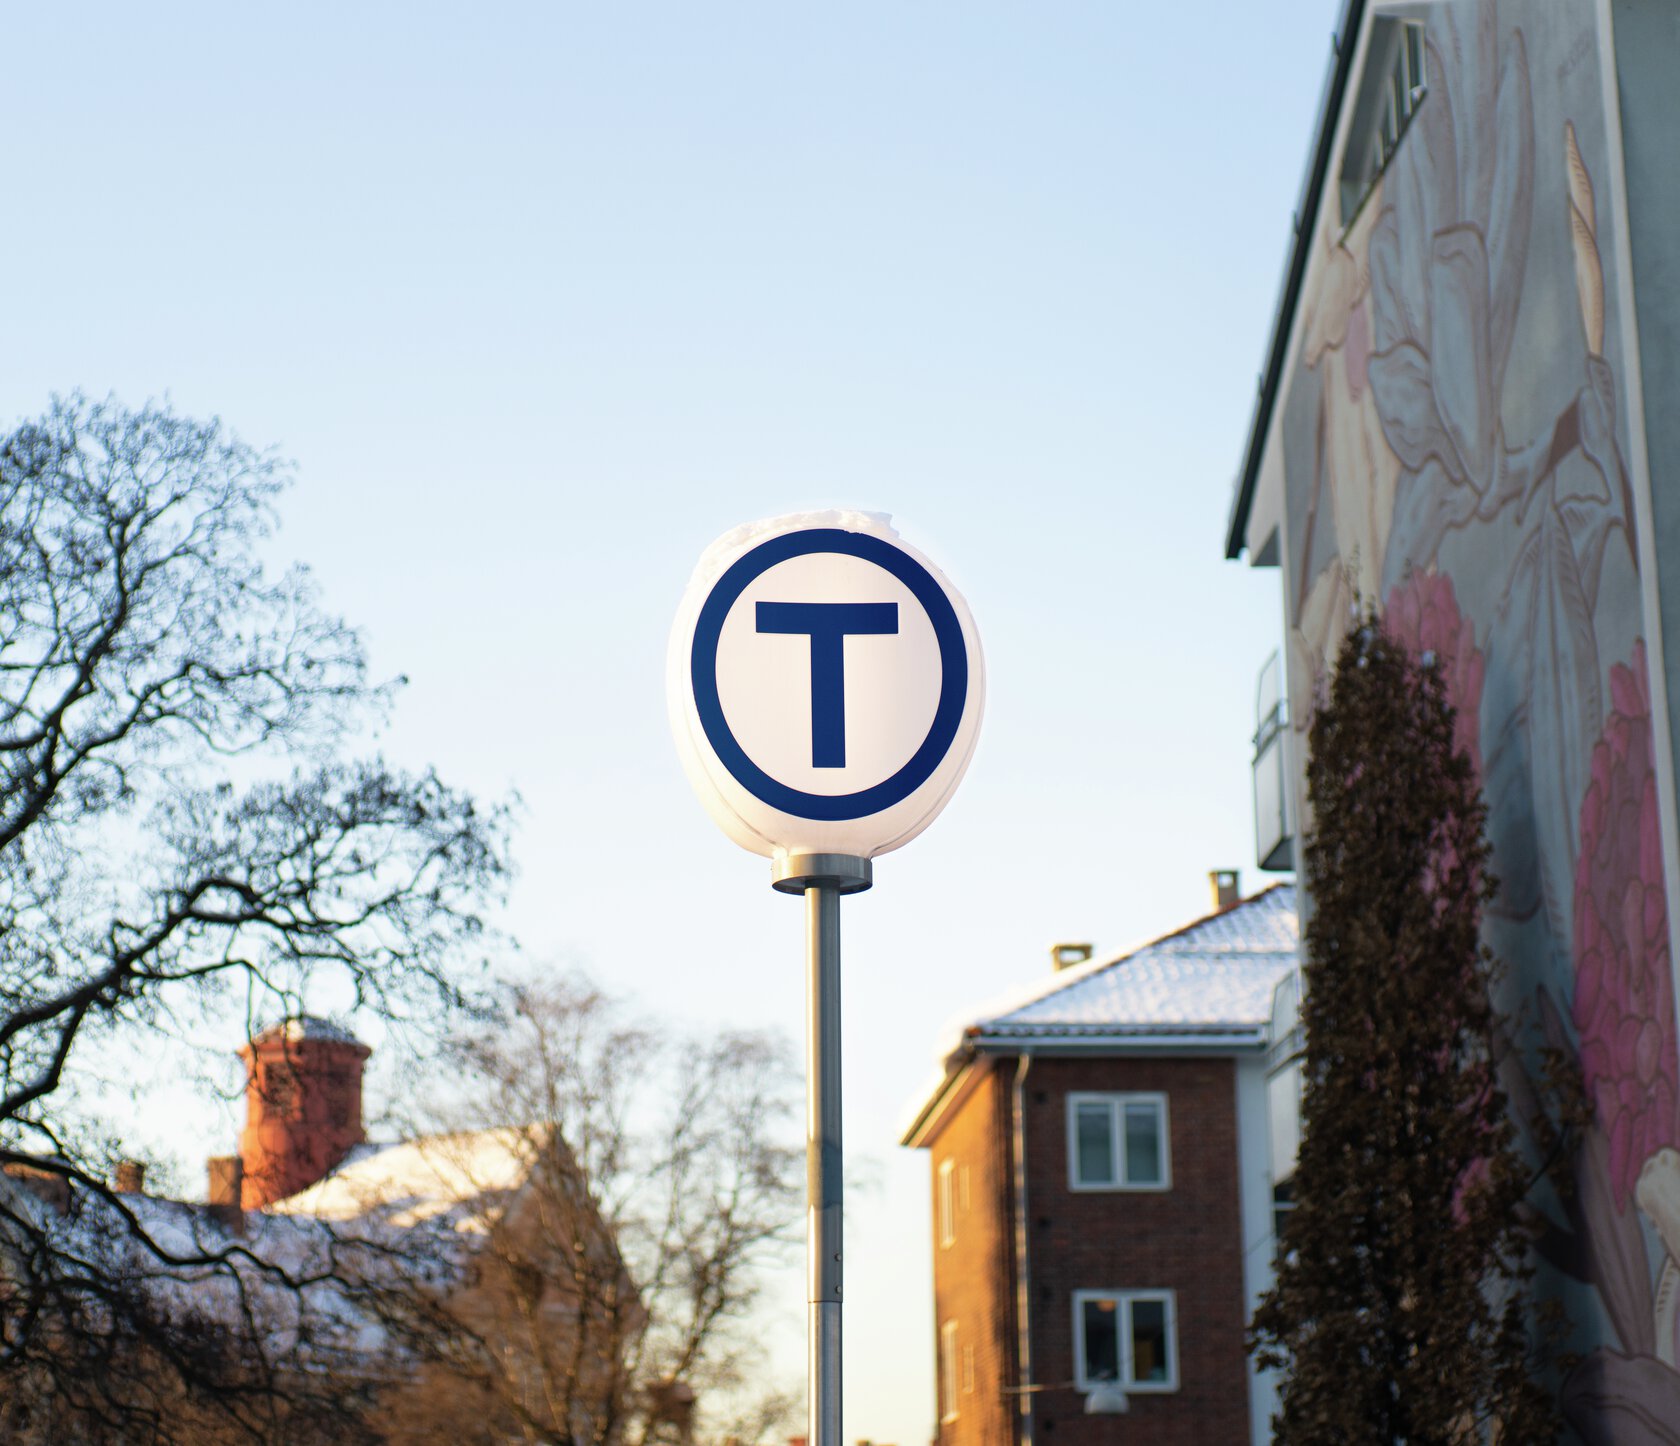 Foran trær og boligblokker står et rundt skilt med en stor   T  for T-bane. Foto